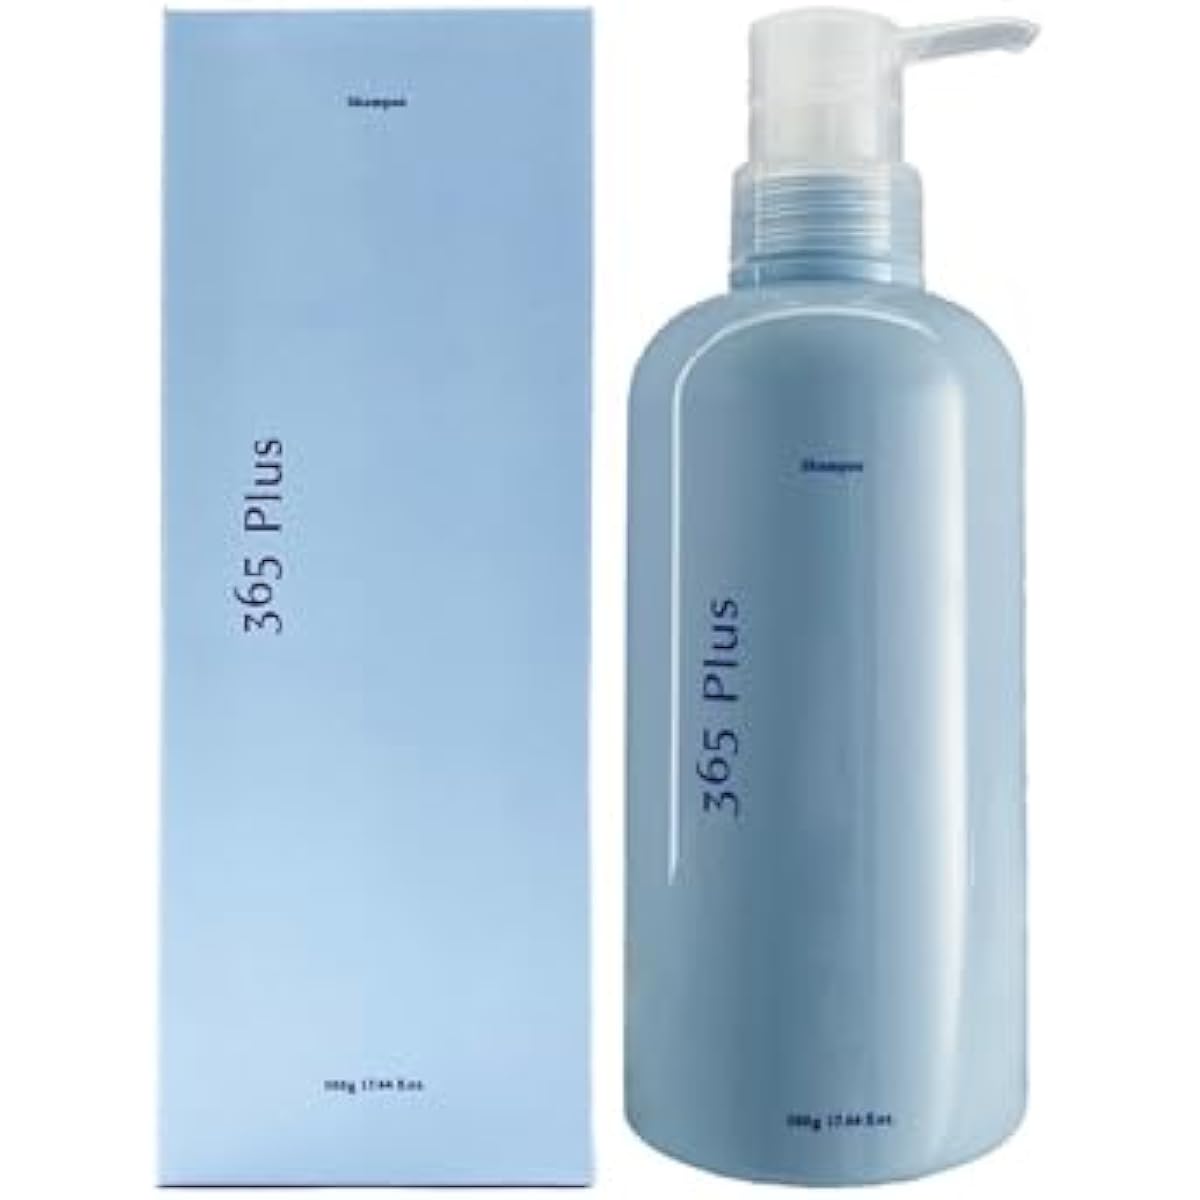 [365Plus] De-shampoo (500g) 1 bottle